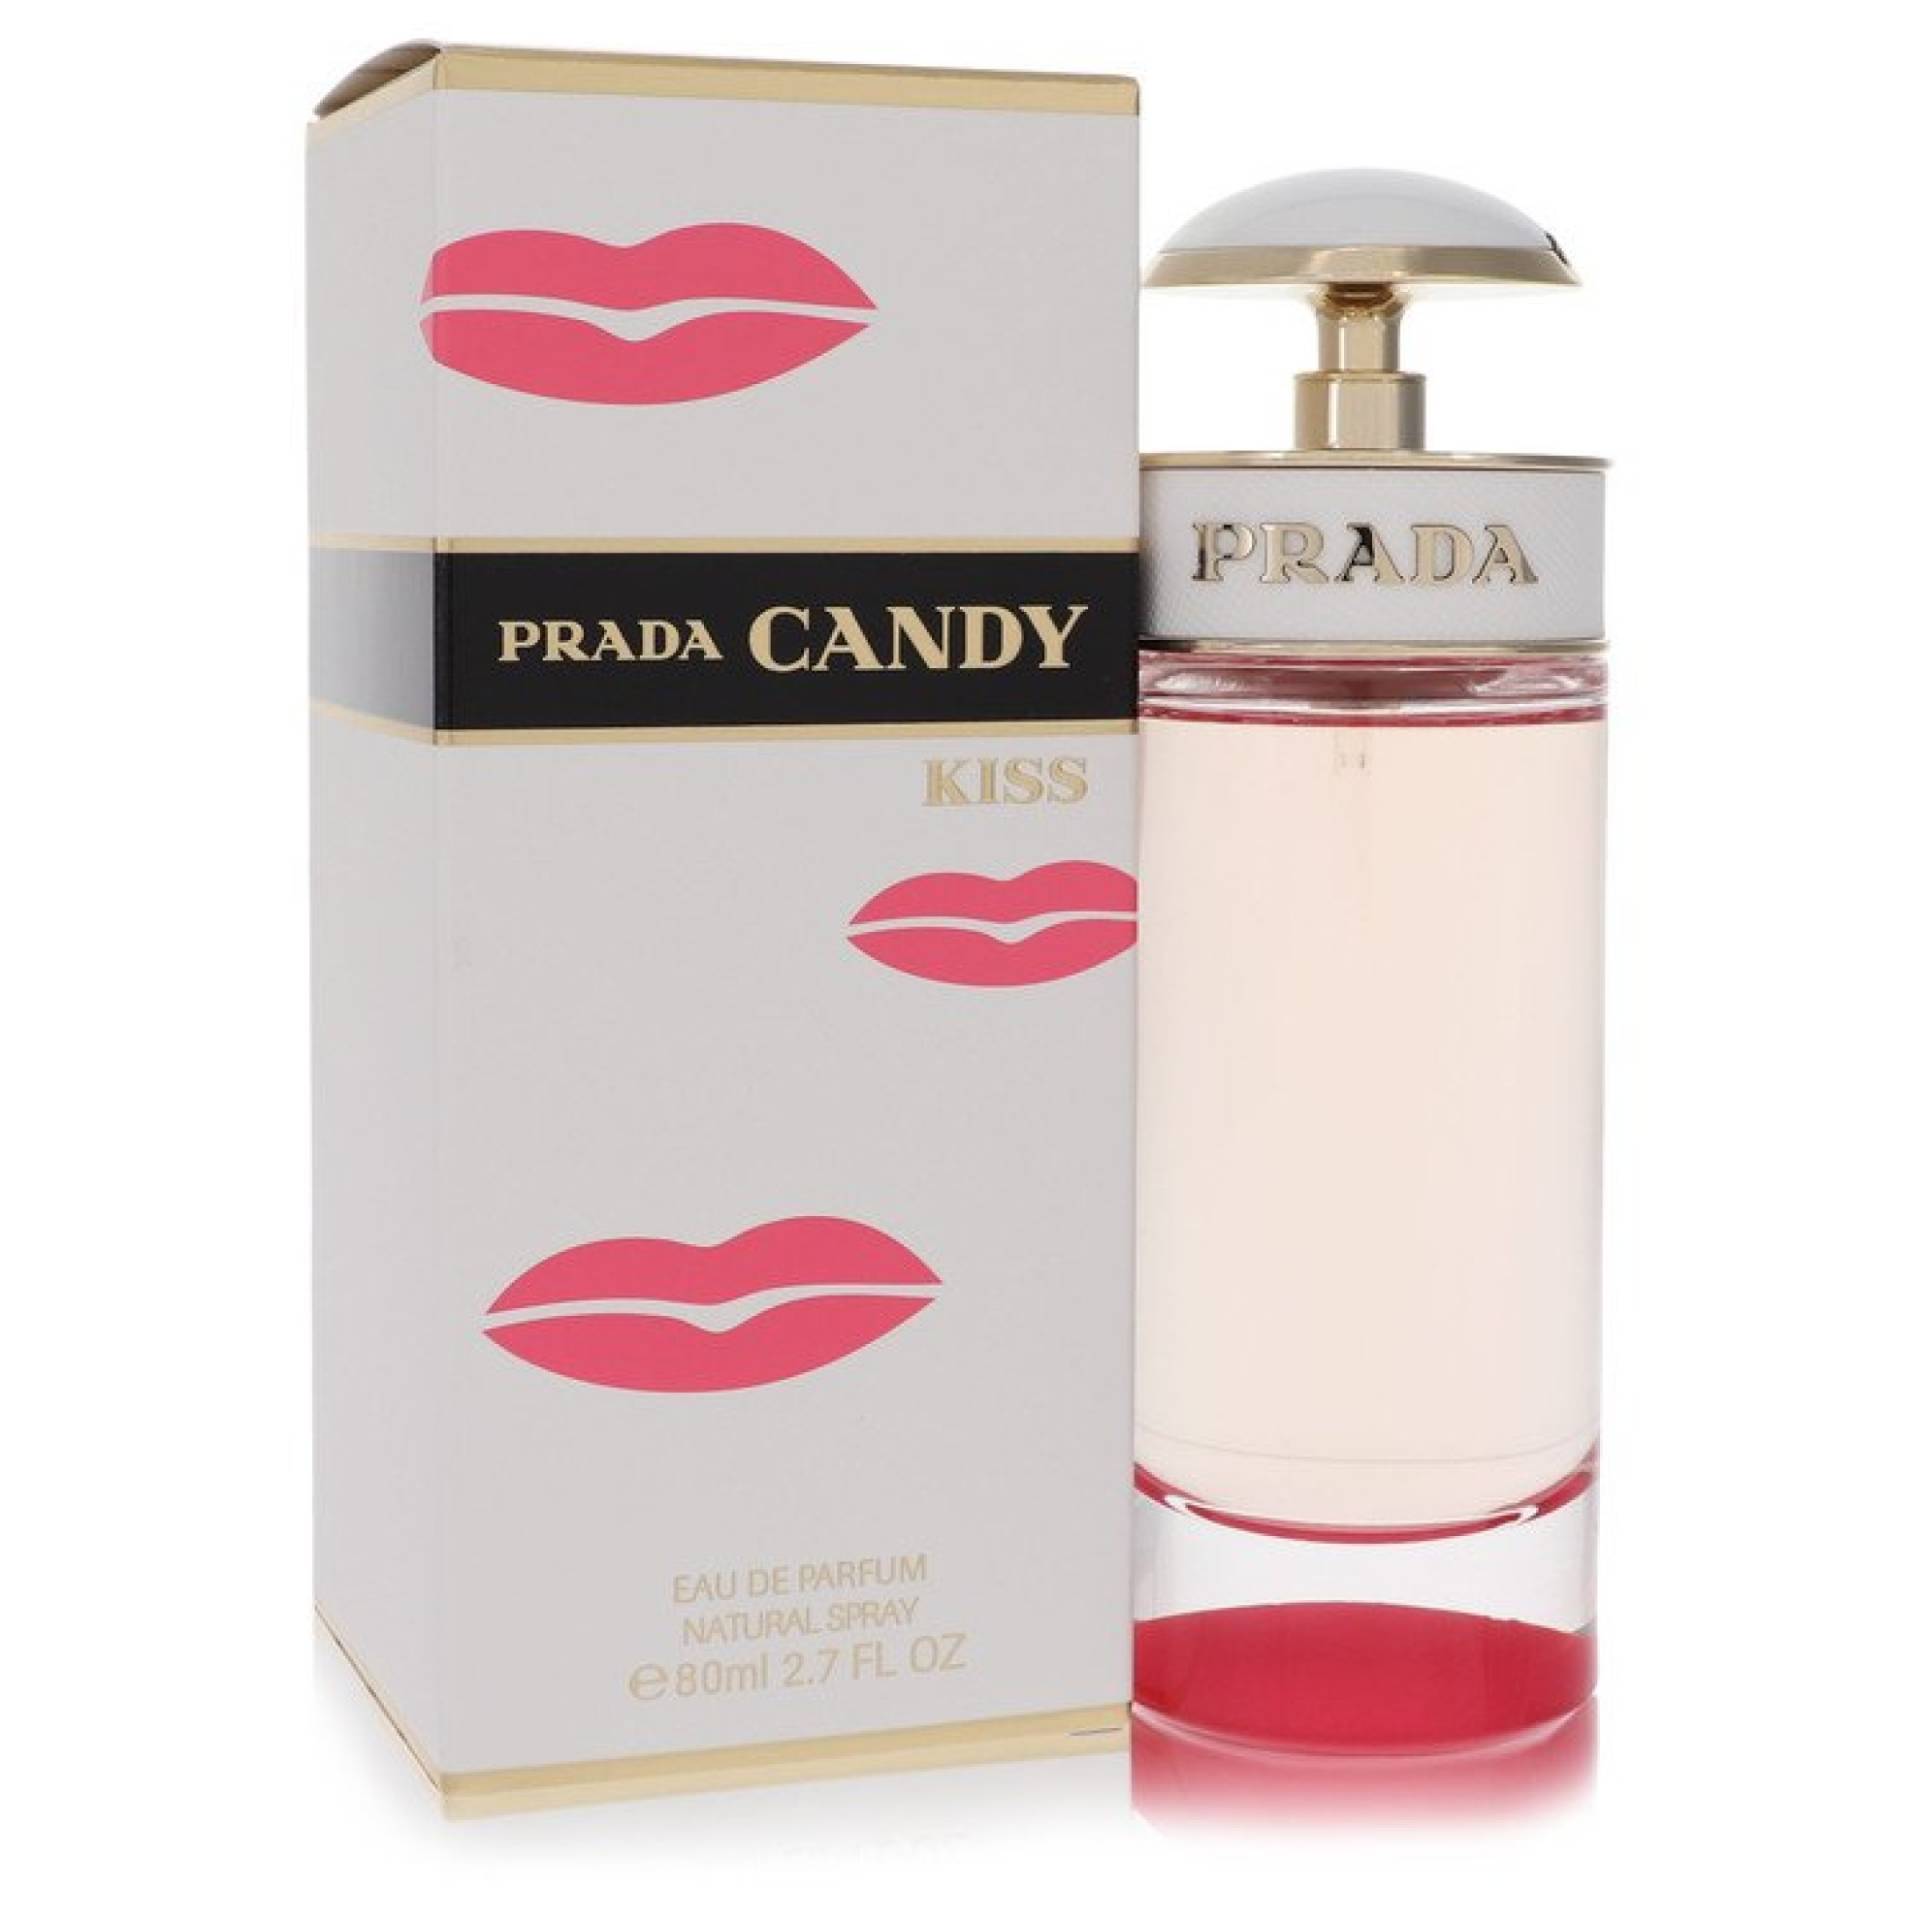 Prada Candy Kiss Eau De Parfum Spray 80 ml von Prada